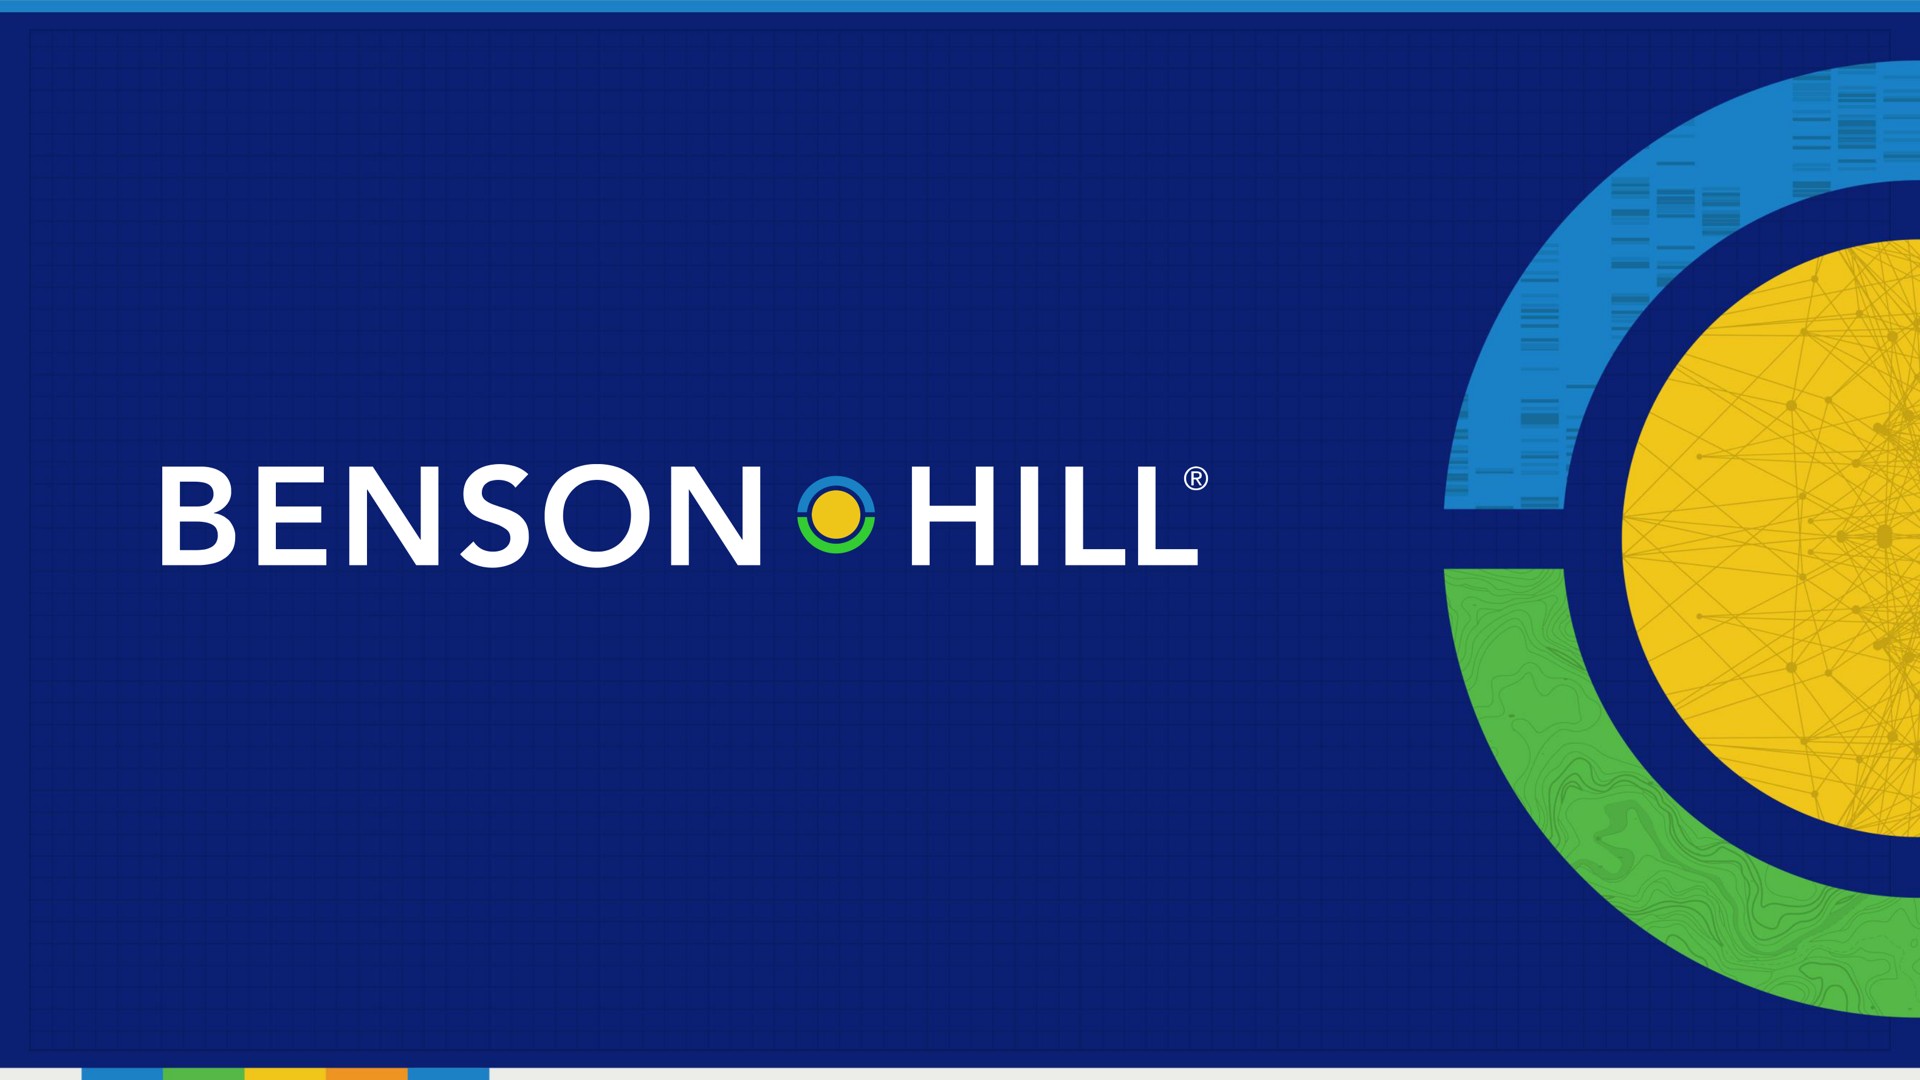 hill | Benson Hill